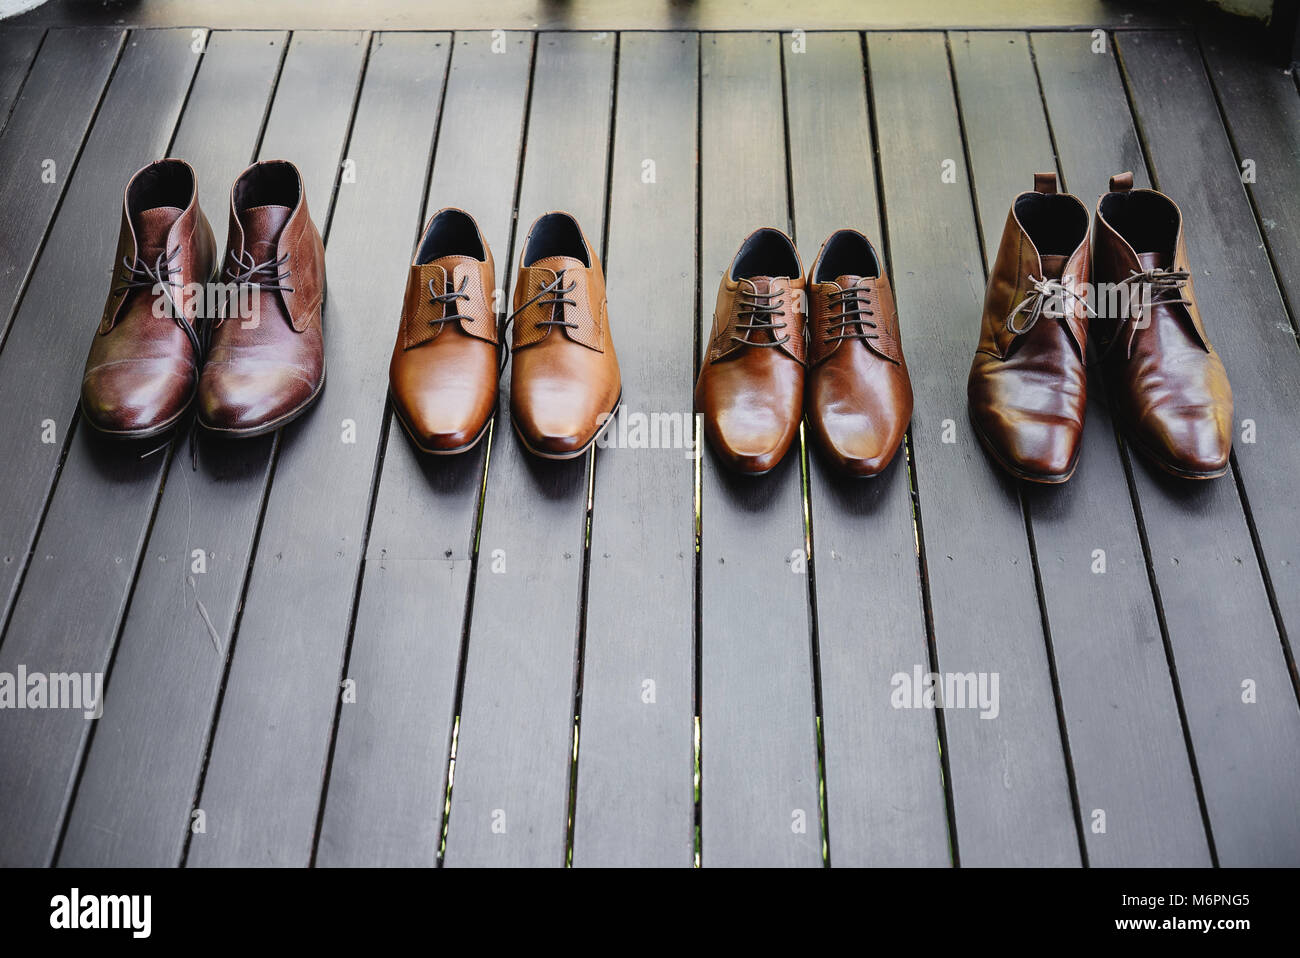 Die 4 Paar Schuhe für Herren, Leder, braune Schuhe auf dem Holzboden  Stockfotografie - Alamy